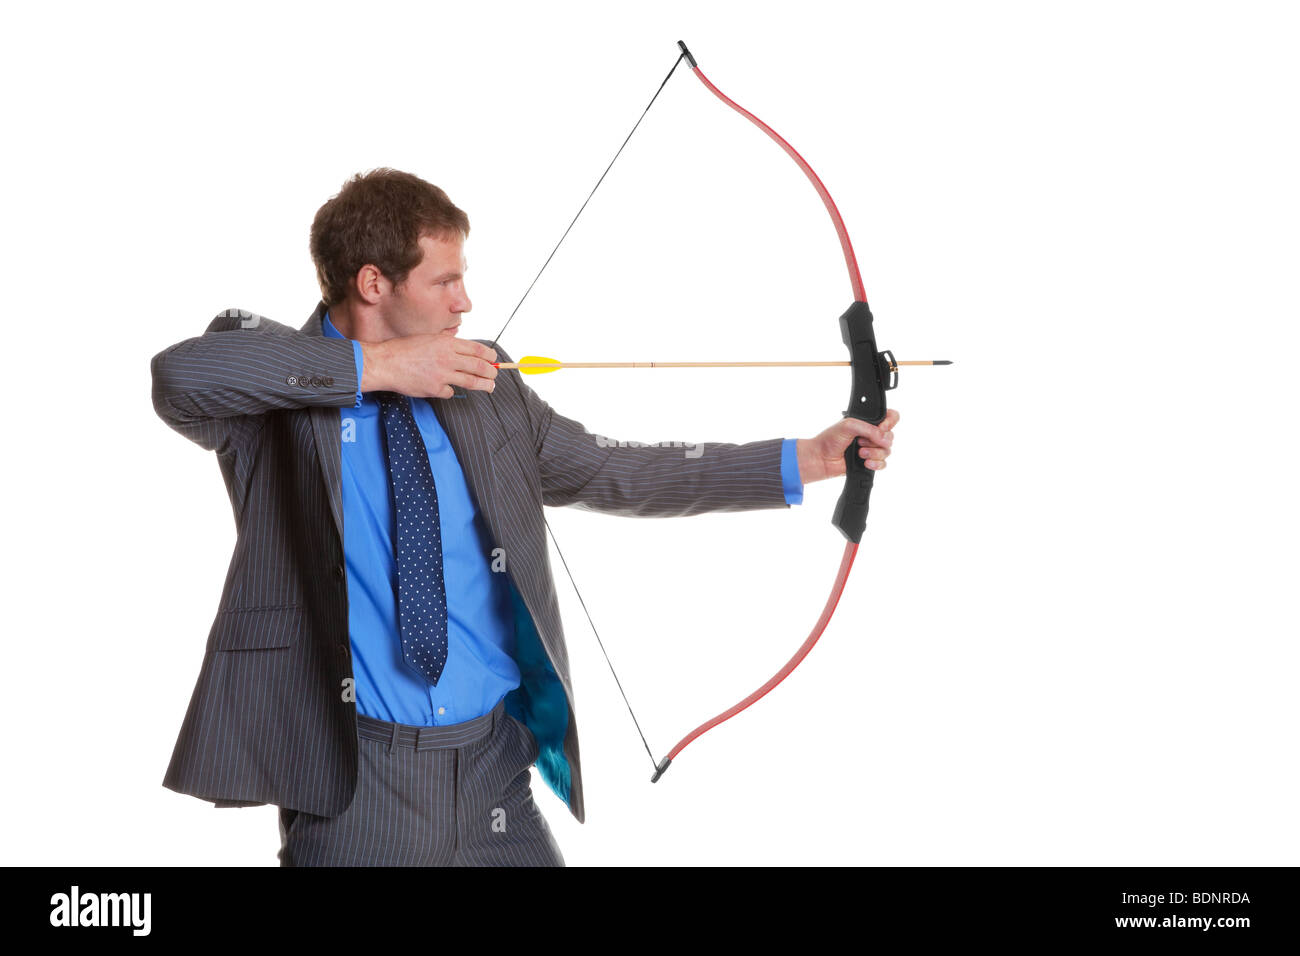 Empresario en traje de rayas disparar un arco y una flecha, aislado en un fondo blanco. Foto de stock